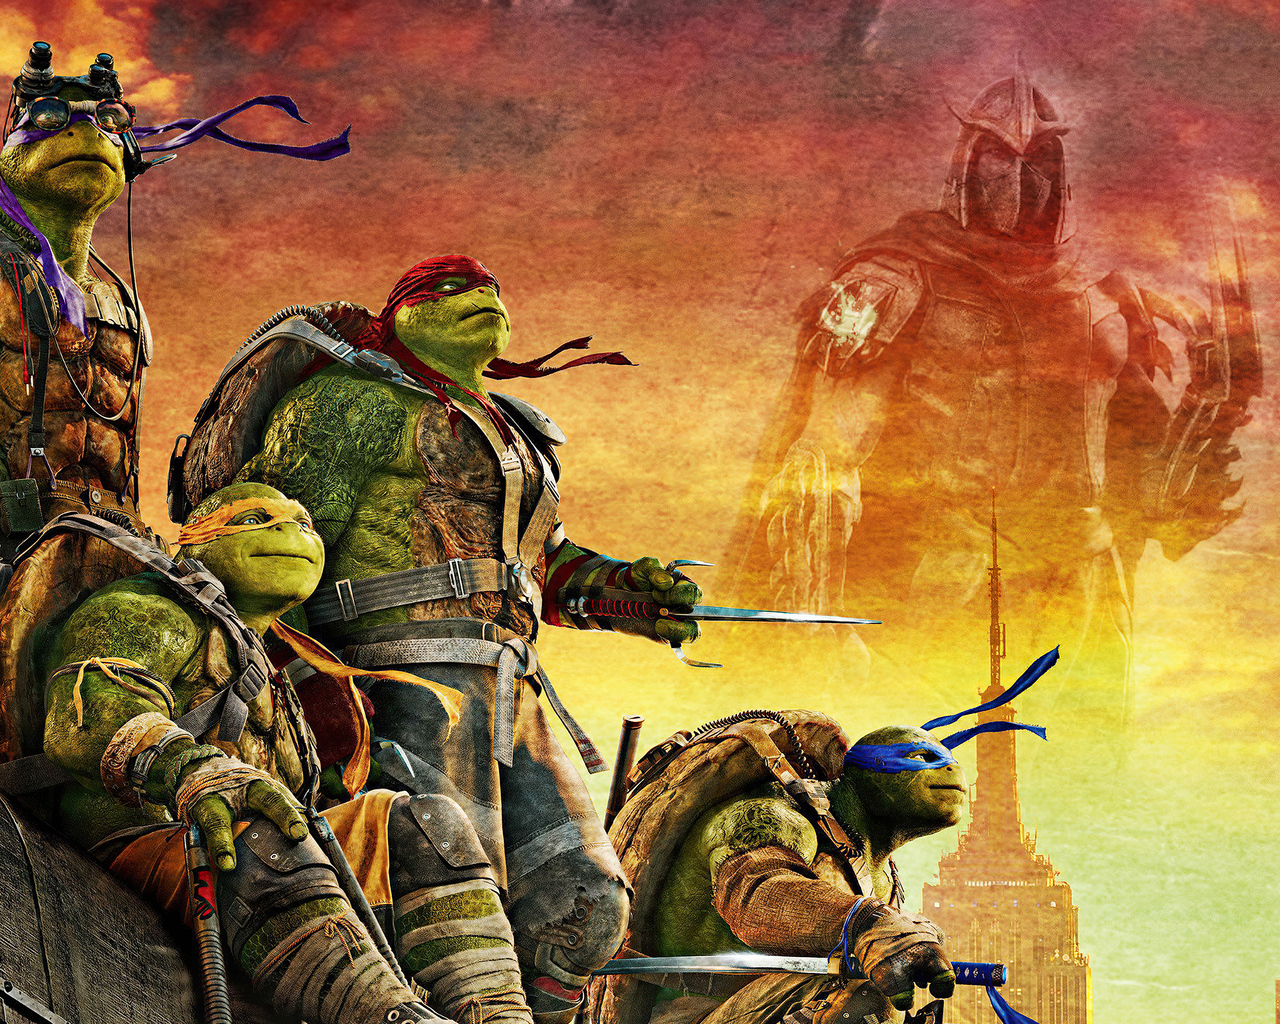 teenage-mutant-ninja-turtles-movie-poster-4k-ad.jpg